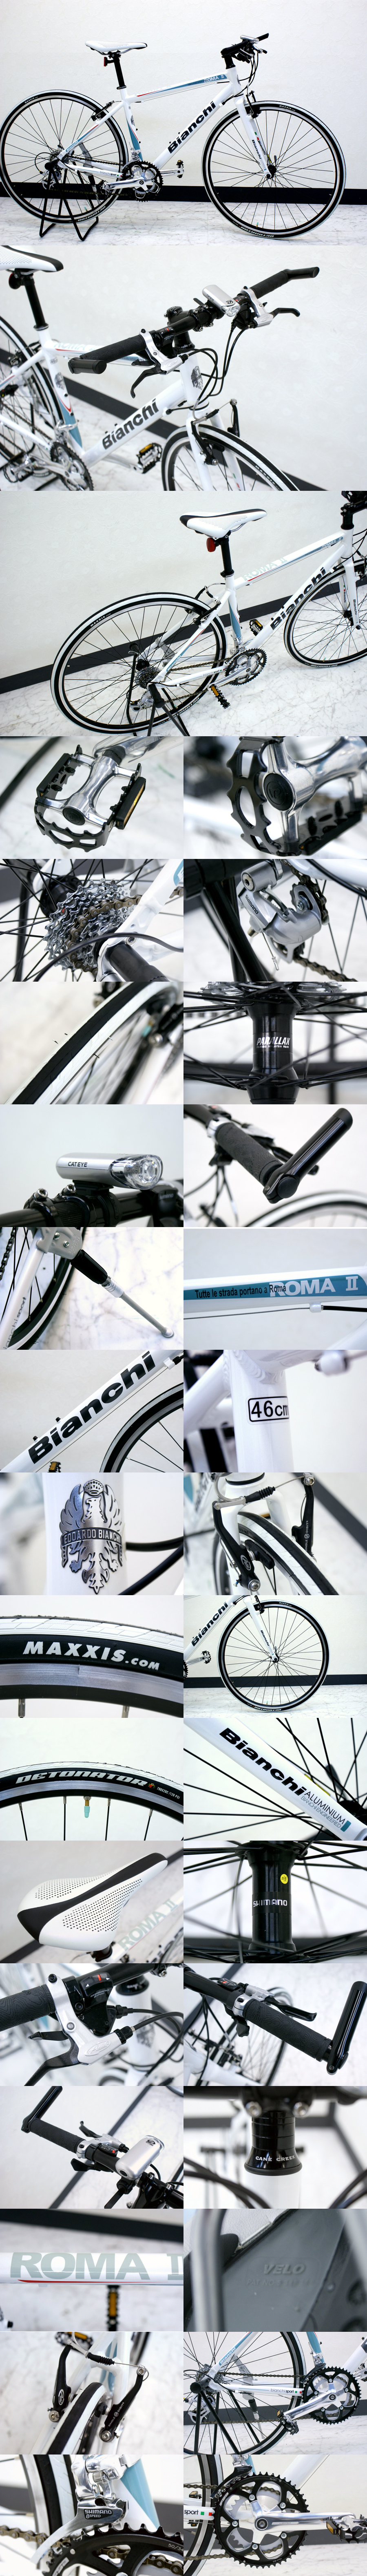 Bianchi/ビアンキ ローマ2 ロードバイク 買取のリサイクルハンター